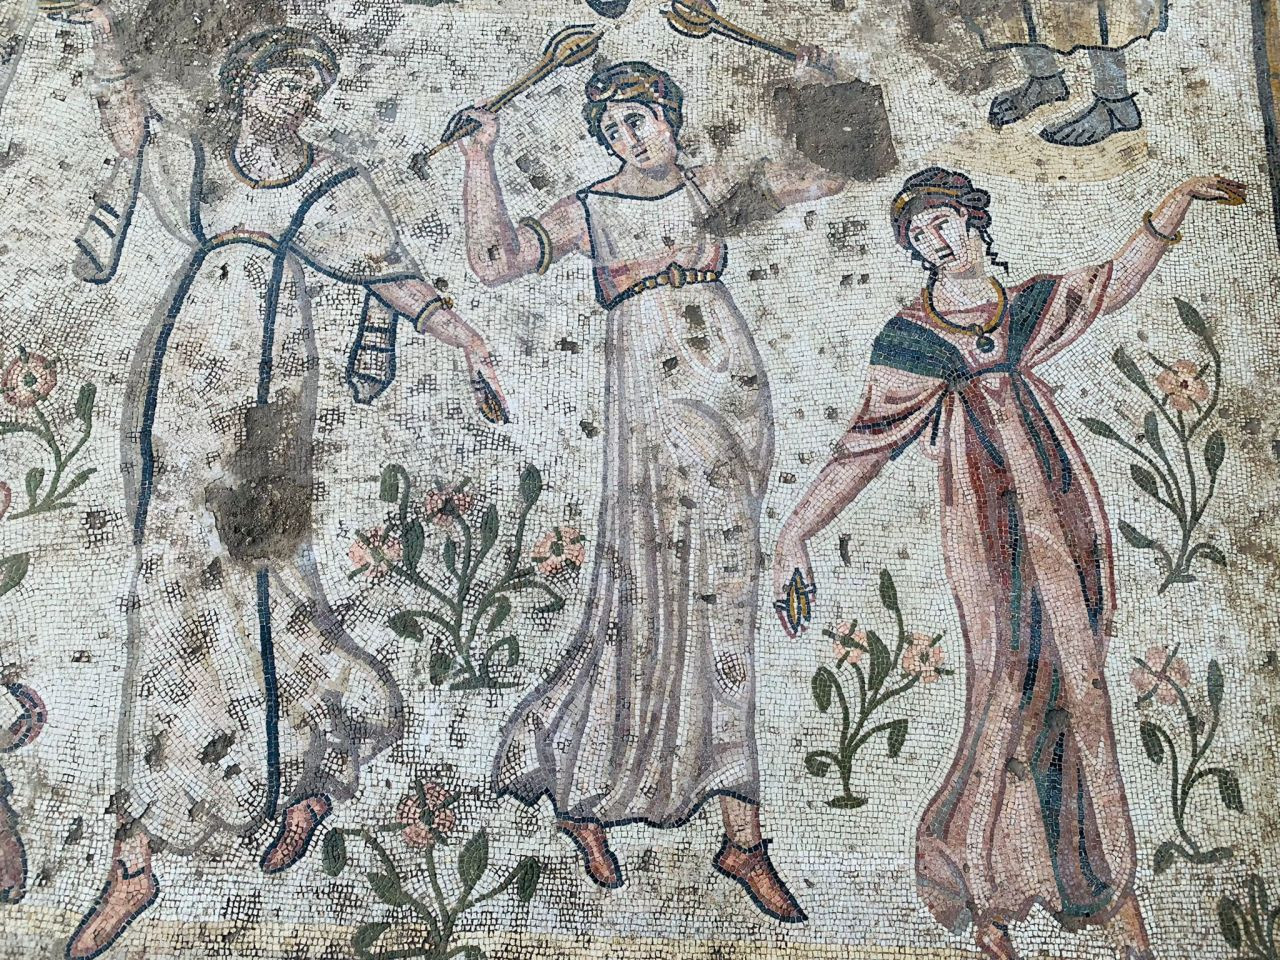 Germanicia Antik Kenti'nde 1500 yıllık mozaik bulundu - Sayfa 4